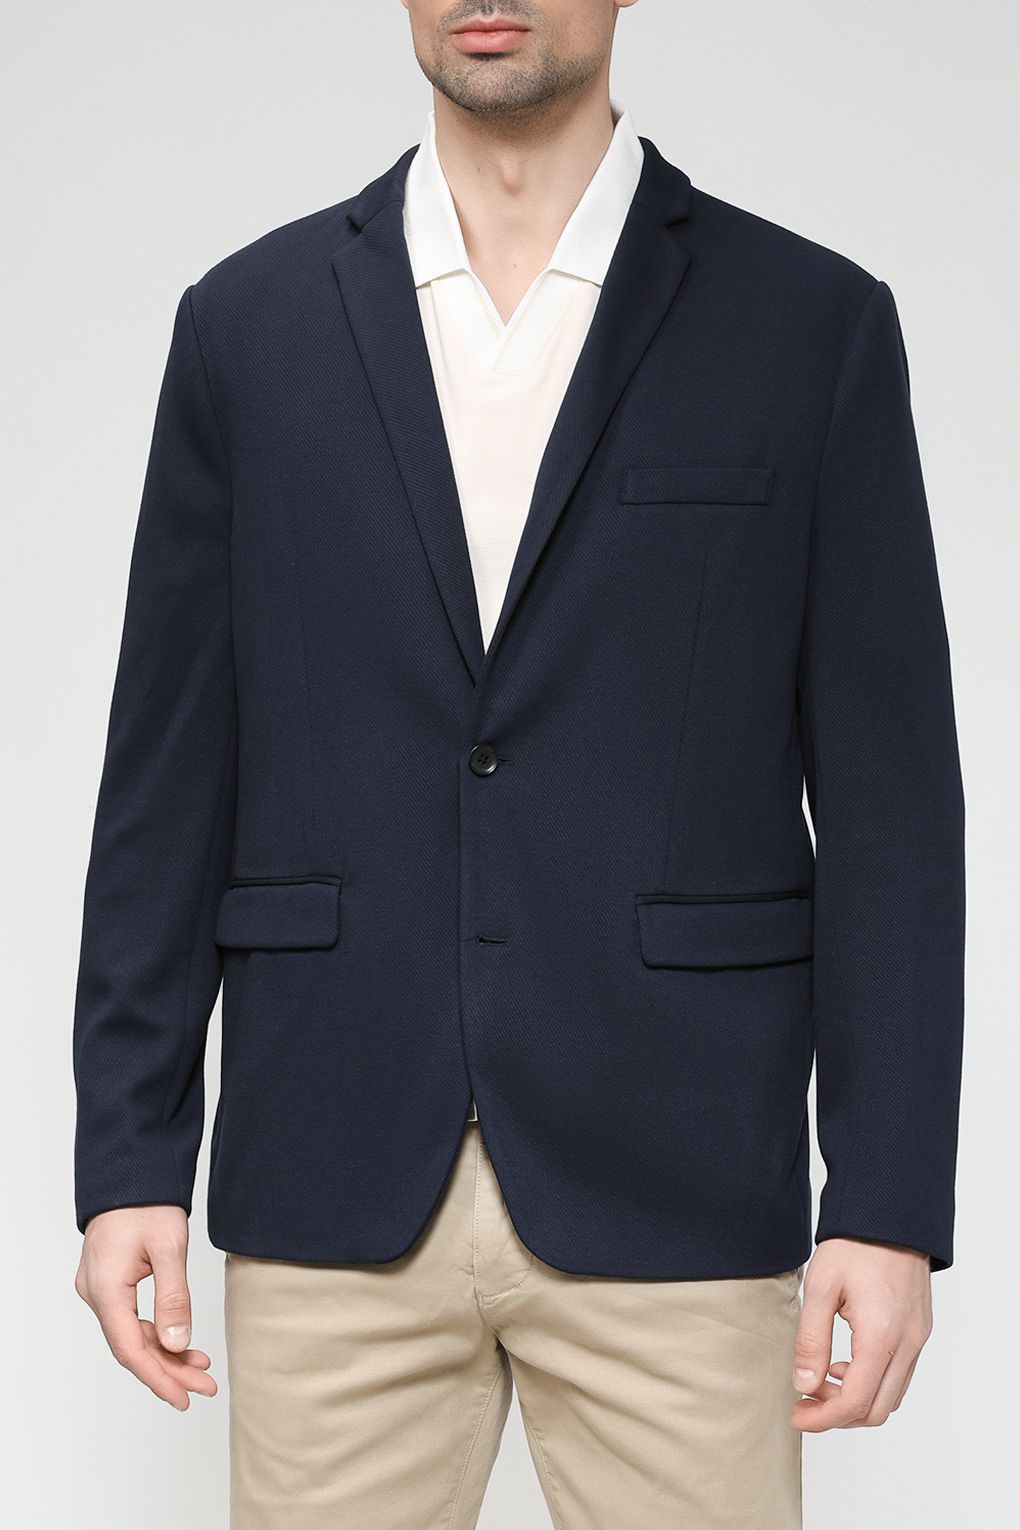 Пиджак мужской Esprit Casual 013EE2G310 синий XL